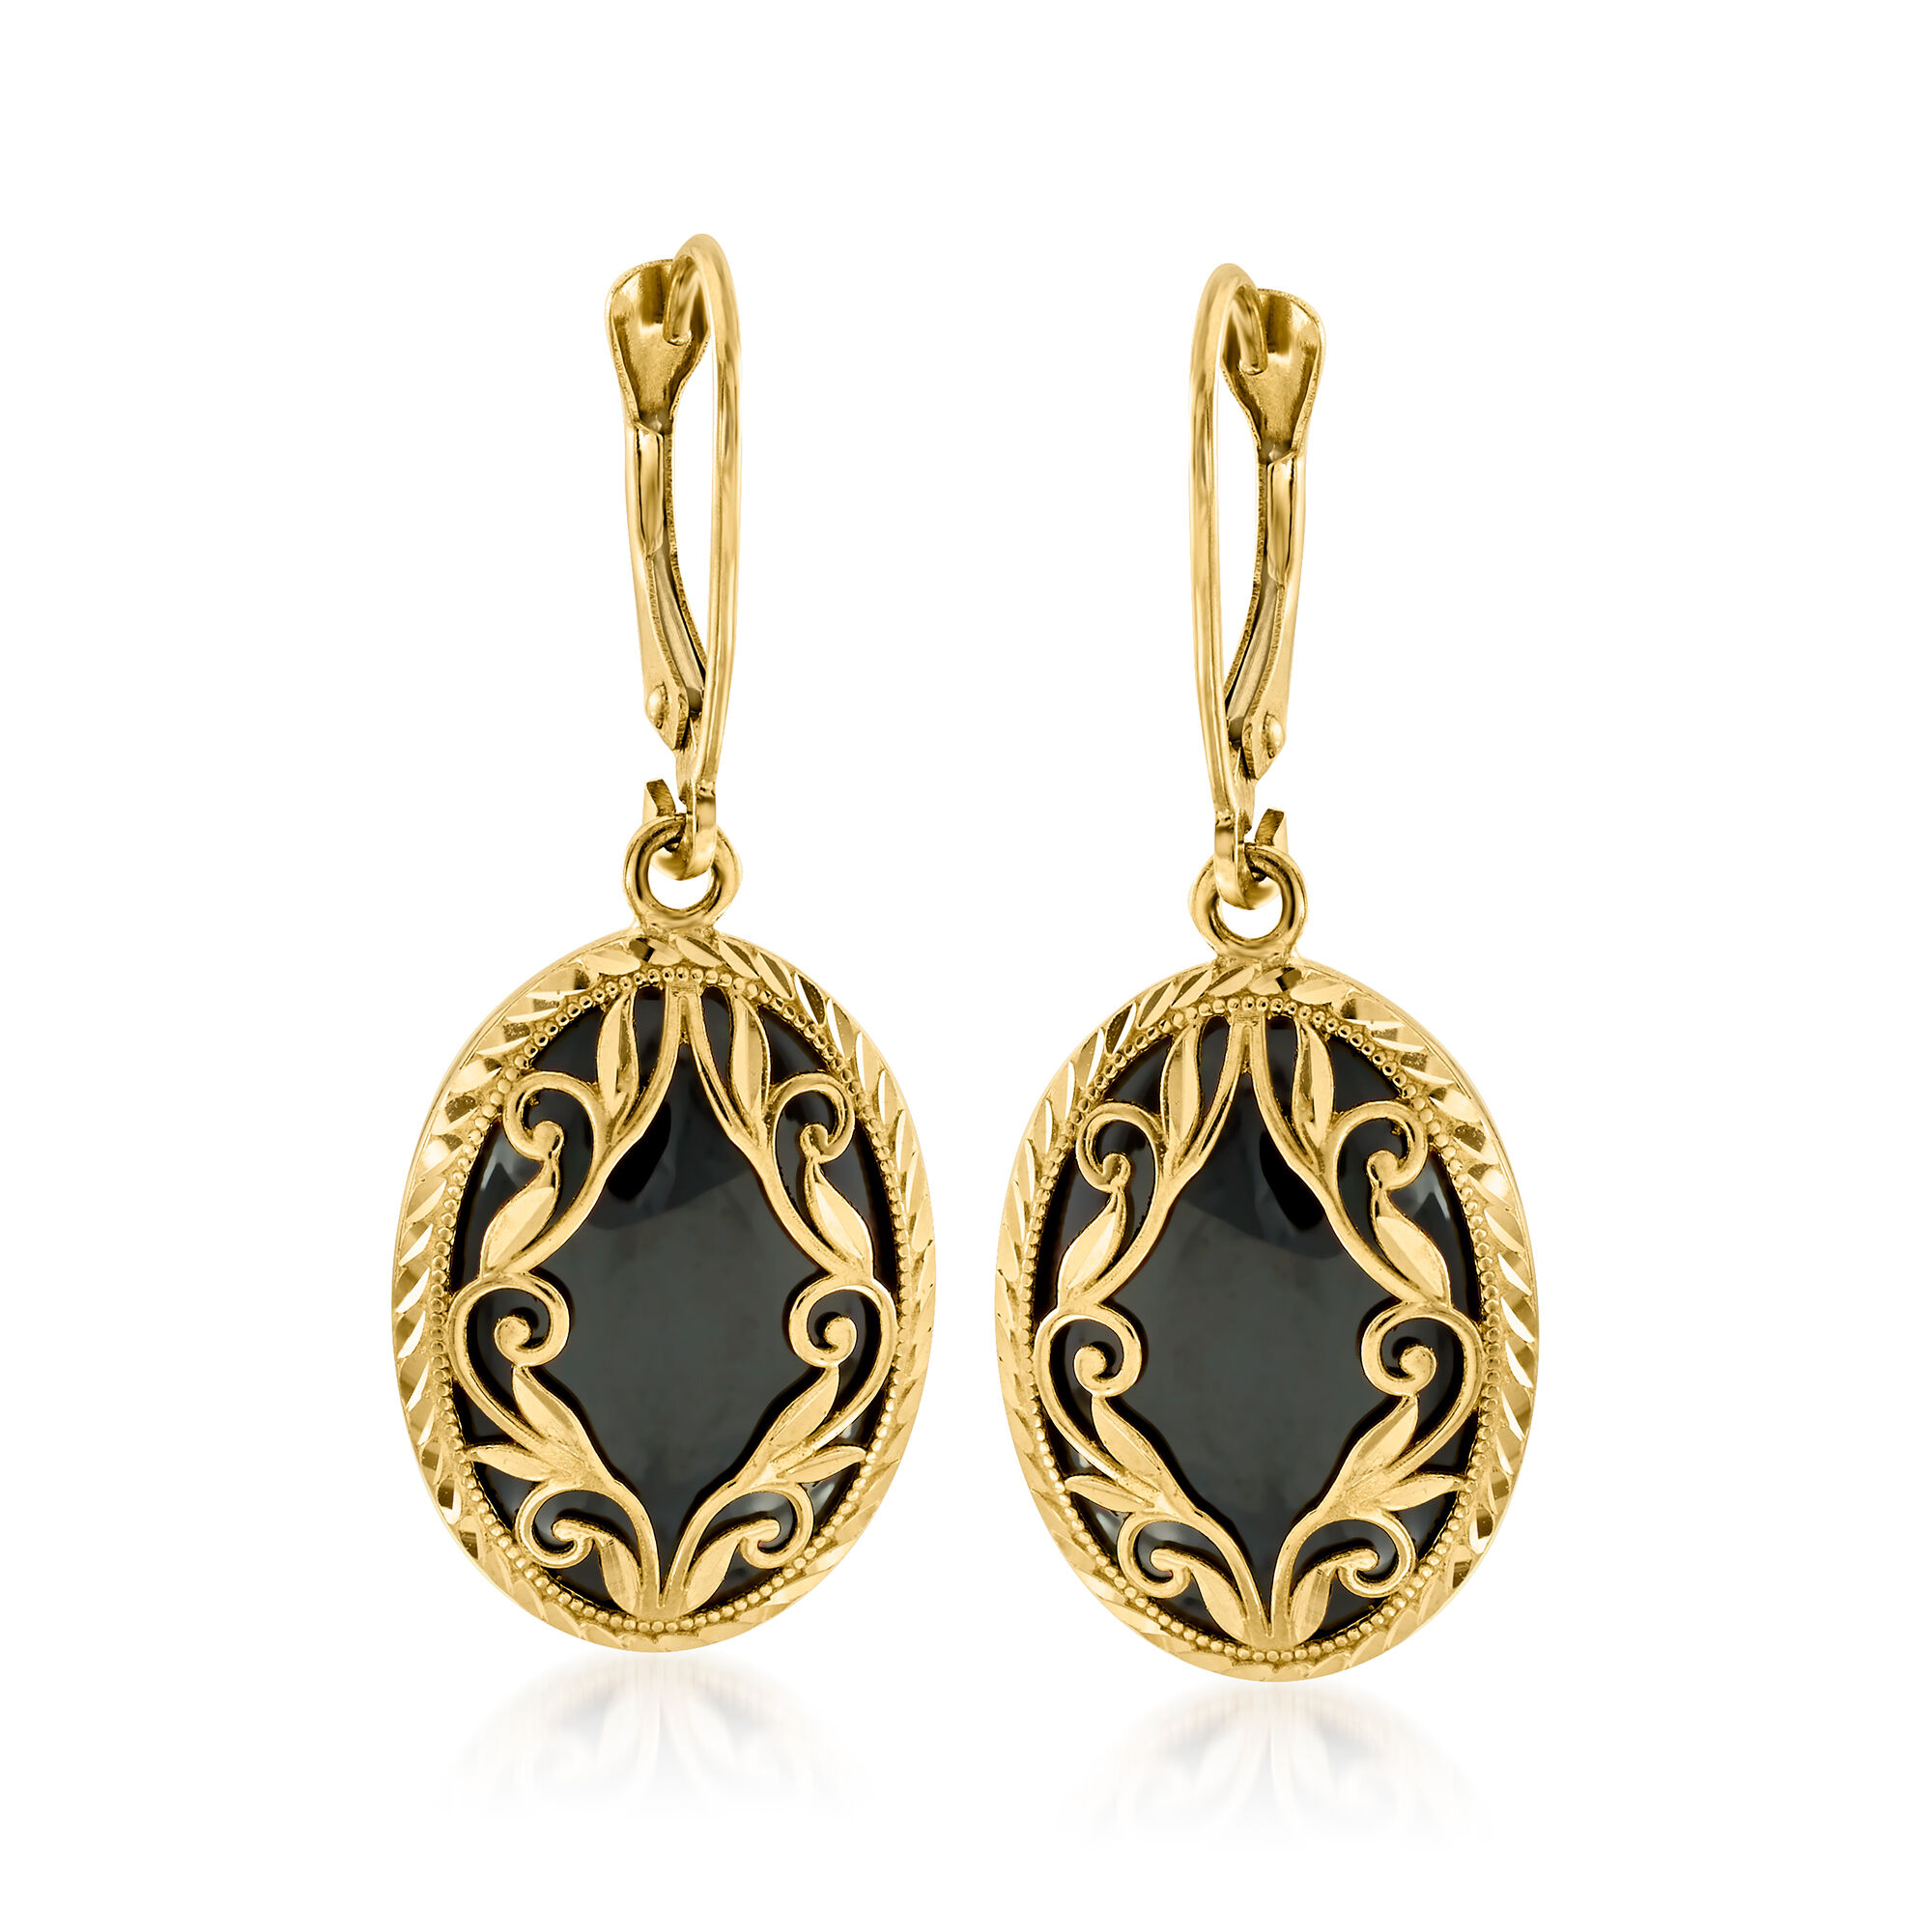 Black Onyx Drop Earrings in 14kt Yellow Gold | Ross-Simons